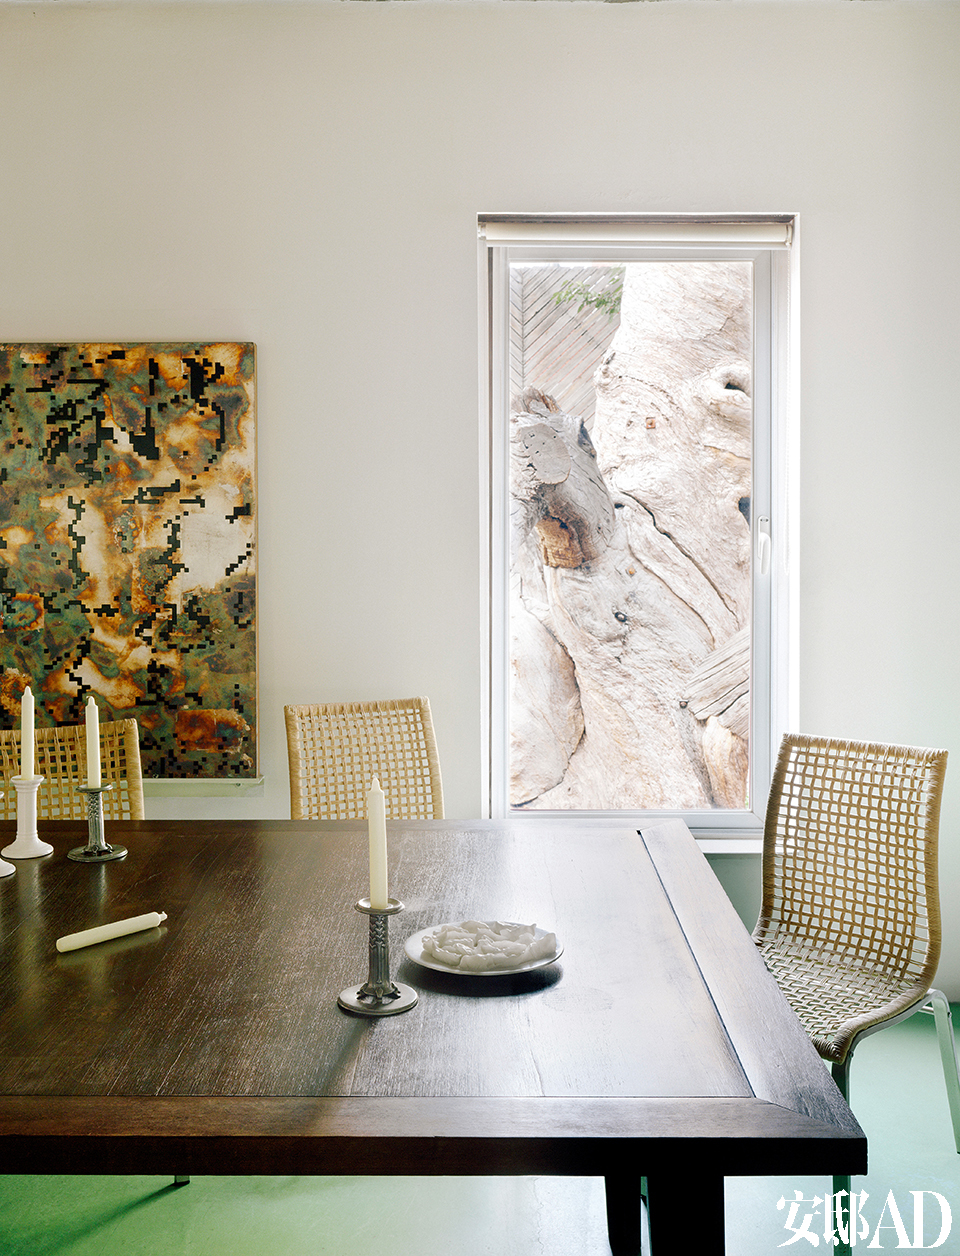 餐厅里开的一面窗，正好对着庭院里的老树艺术品，好像一幅画，框进了室内的墙上。坐在餐厅里，可以通过窗户直接欣赏到院中的老树状艺术品。墙上的艺术品是冯梦波的综合材质画《一比特》。